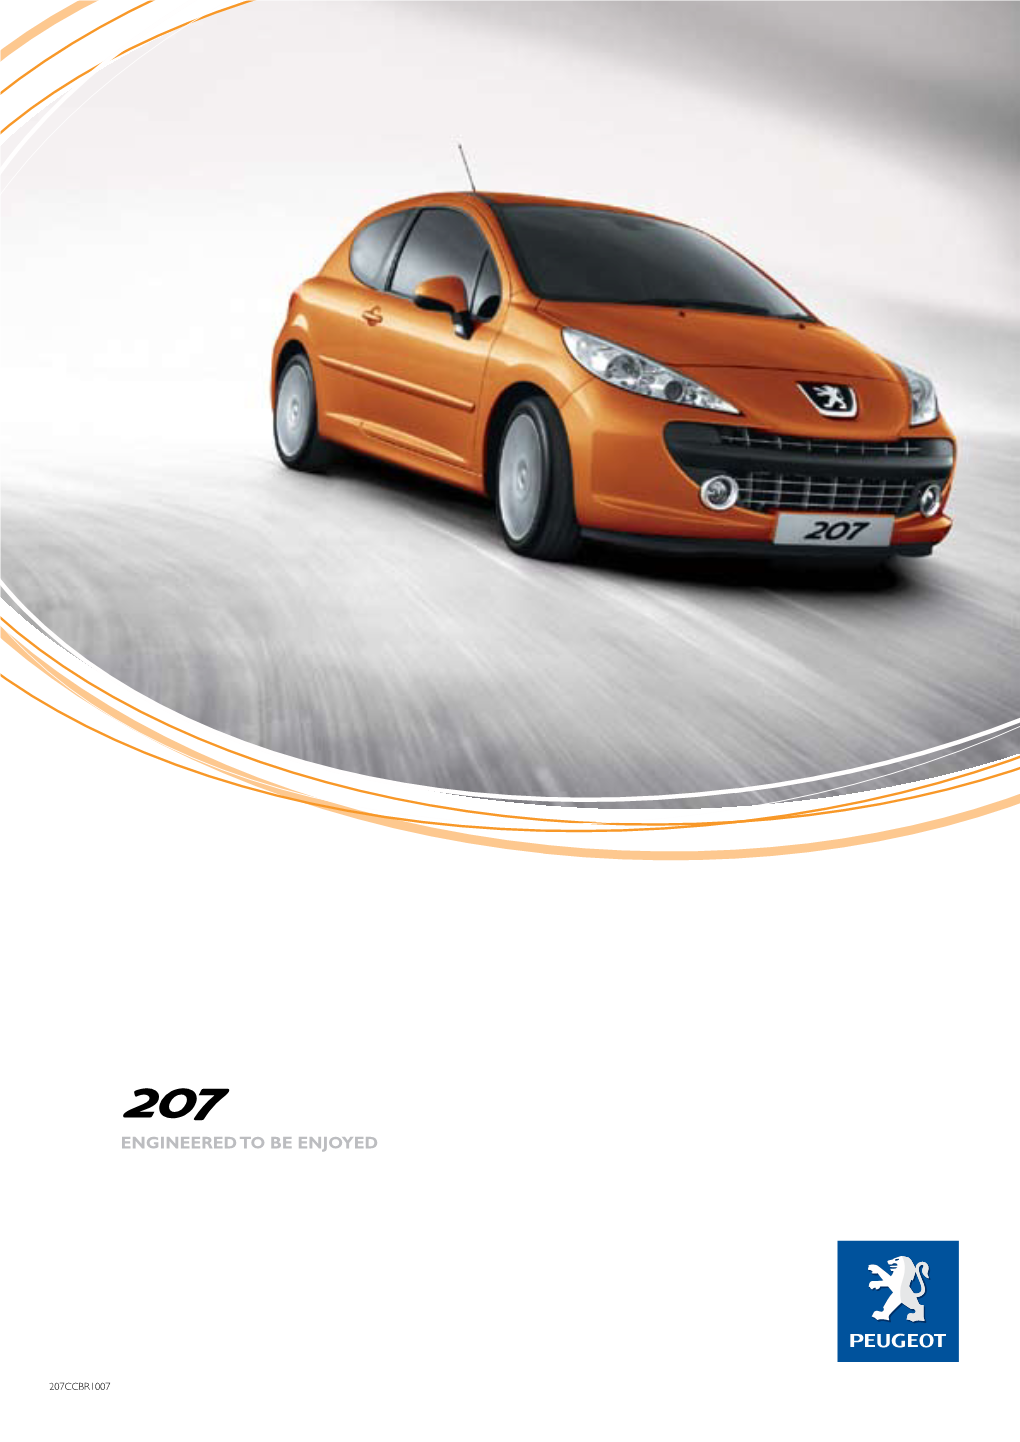 Brochure: Peugeot A7.I 207 (January 2008)